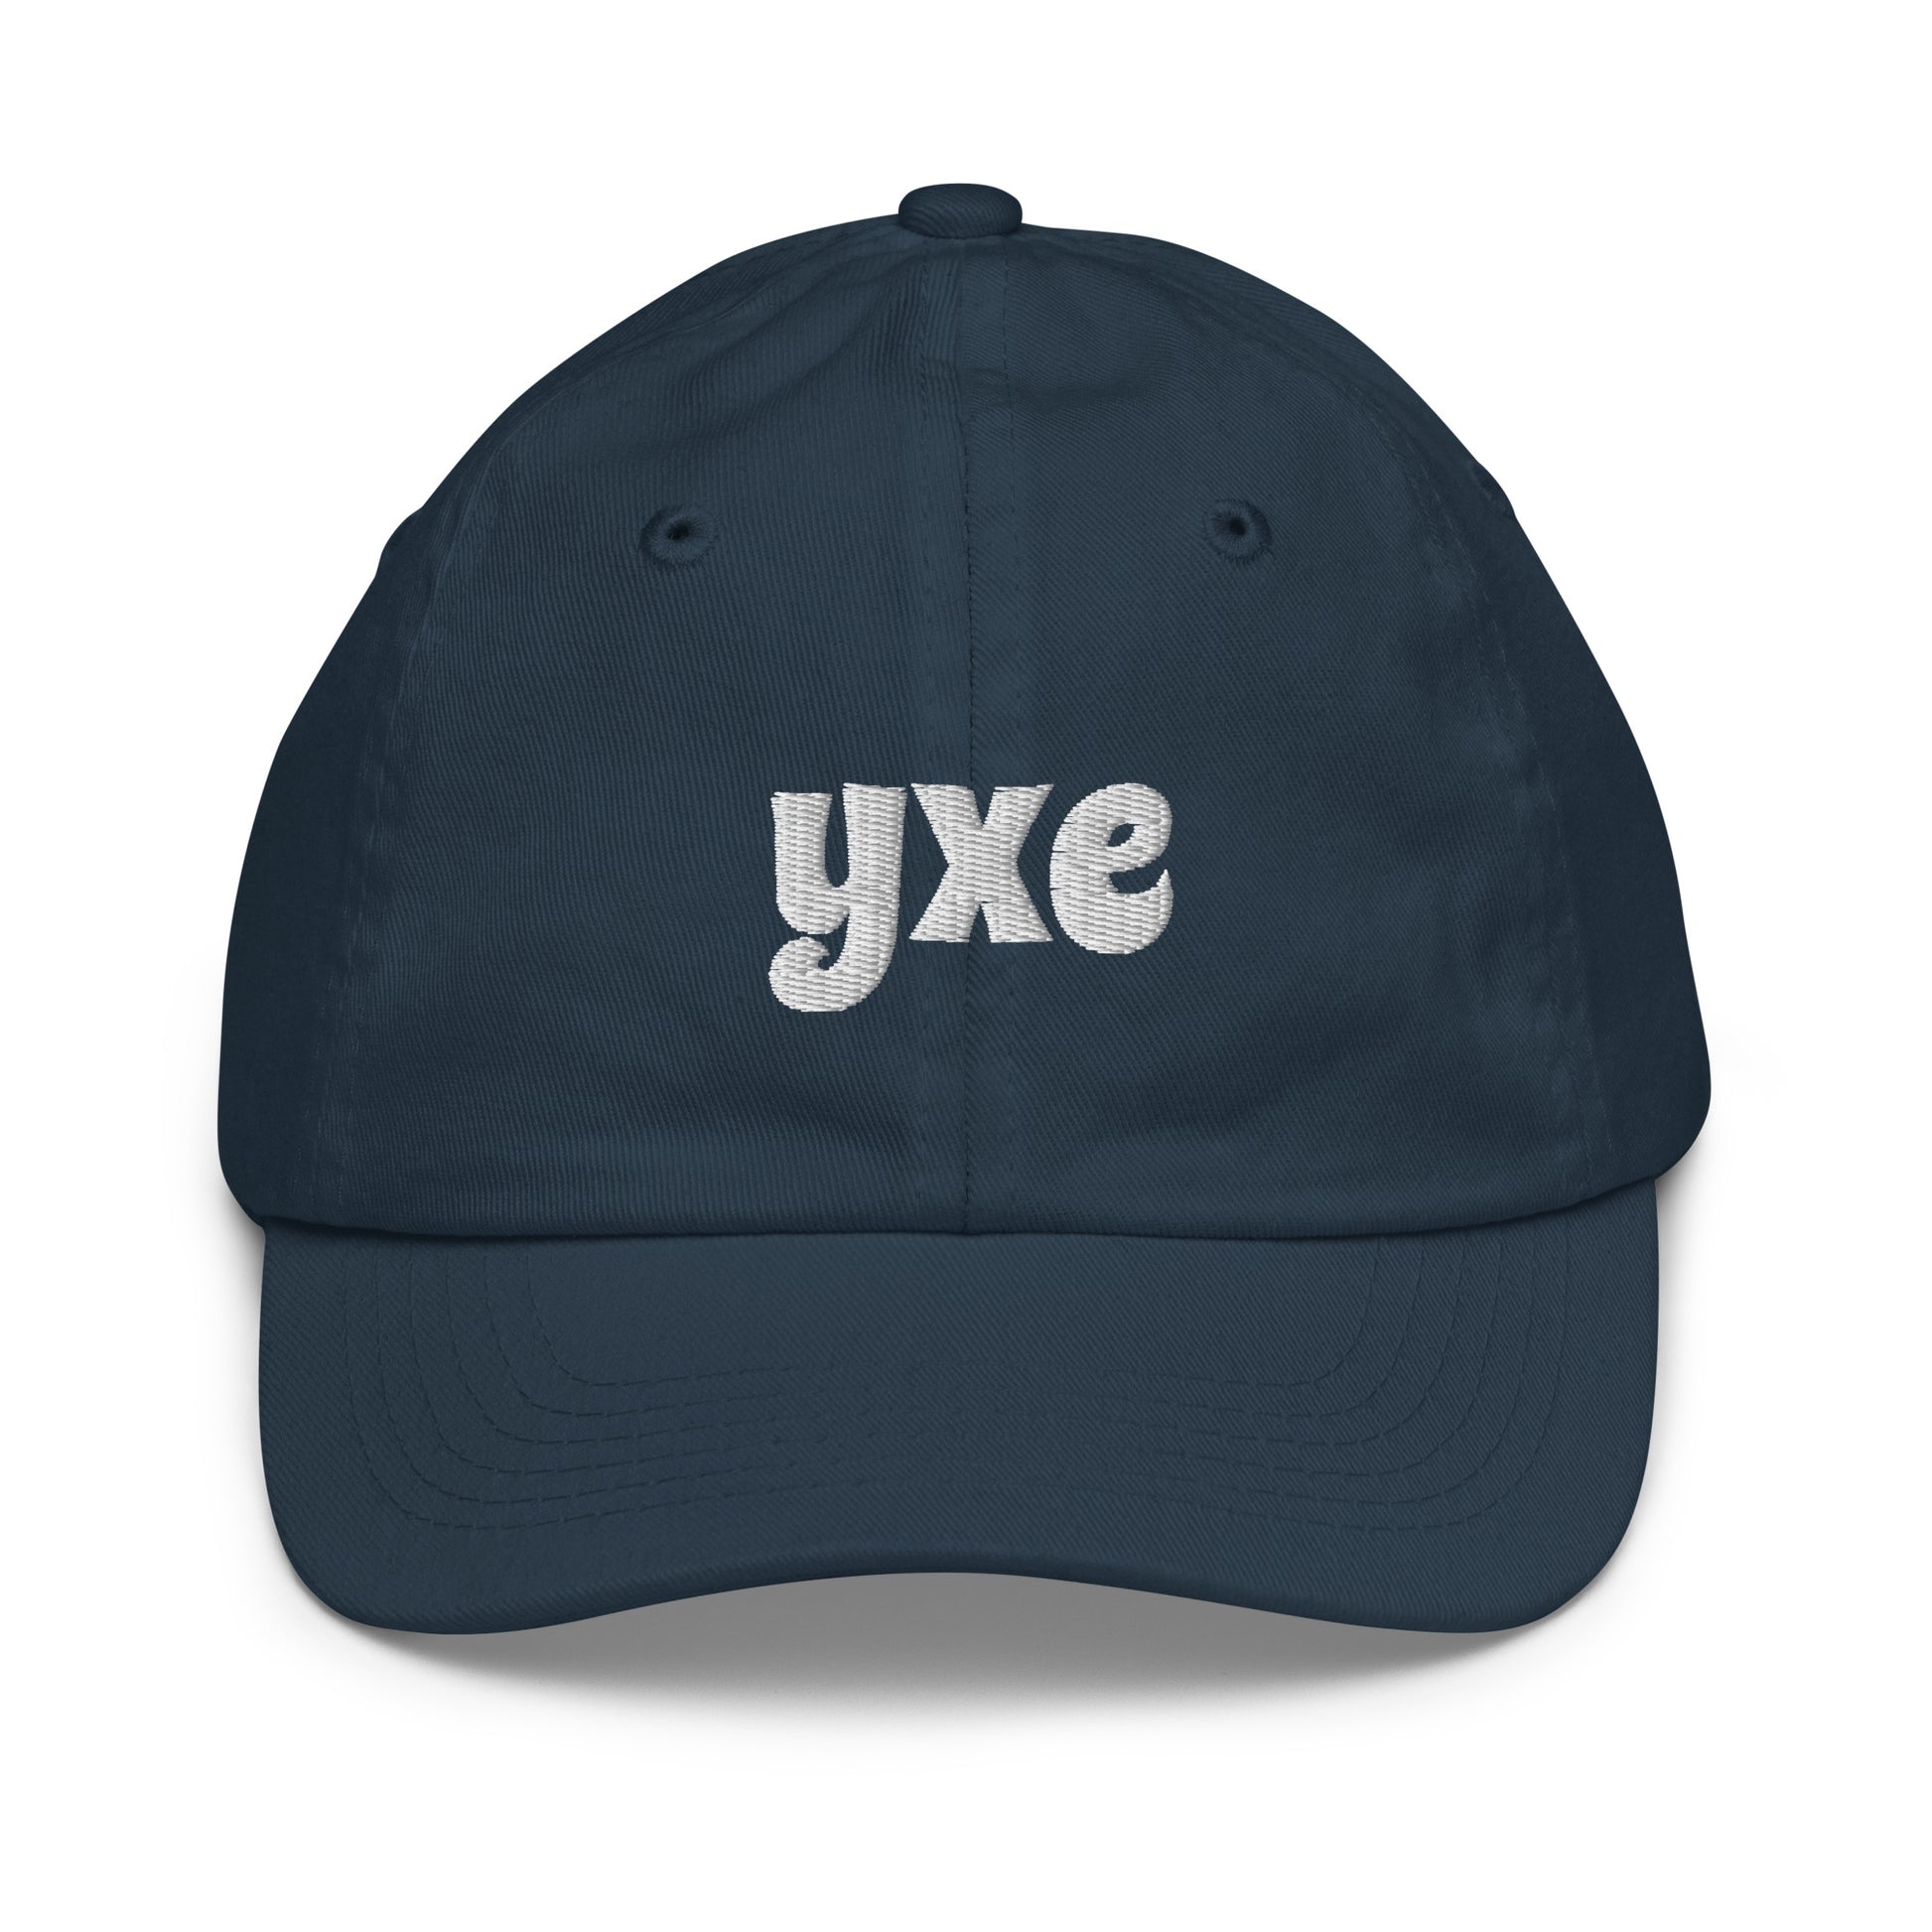 Groovy Kid's Baseball Cap - White • YXE Saskatoon • YHM Designs - Image 12